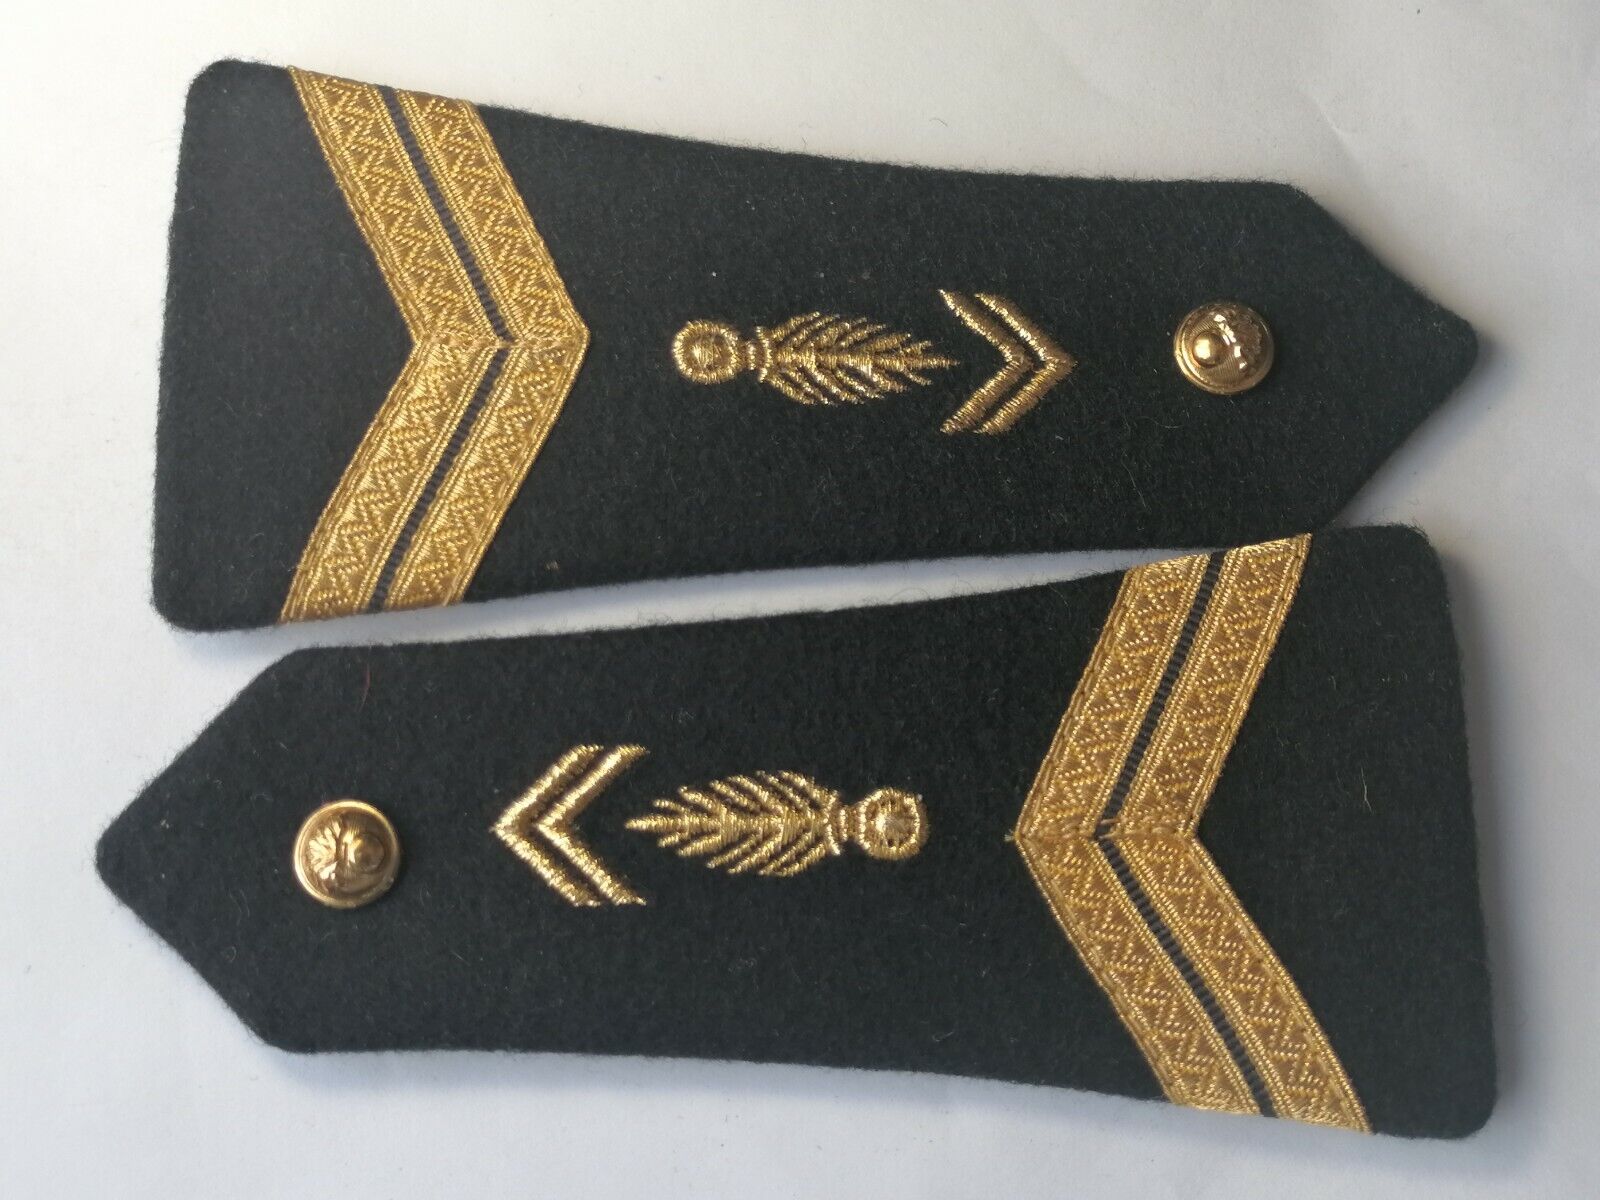 08817 épaulette de gendarmerie  mobile de maréchal des logis